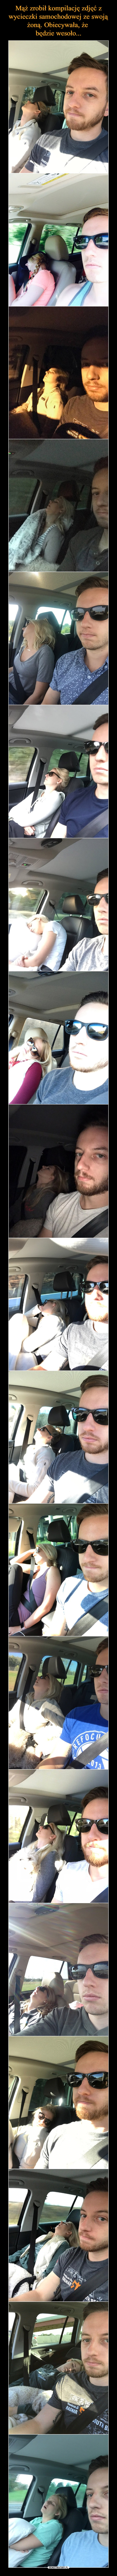 Mąż zrobił kompilację zdjęć z wycieczki samochodowej ze swoją żoną. Obiecywała, że 
będzie wesoło...